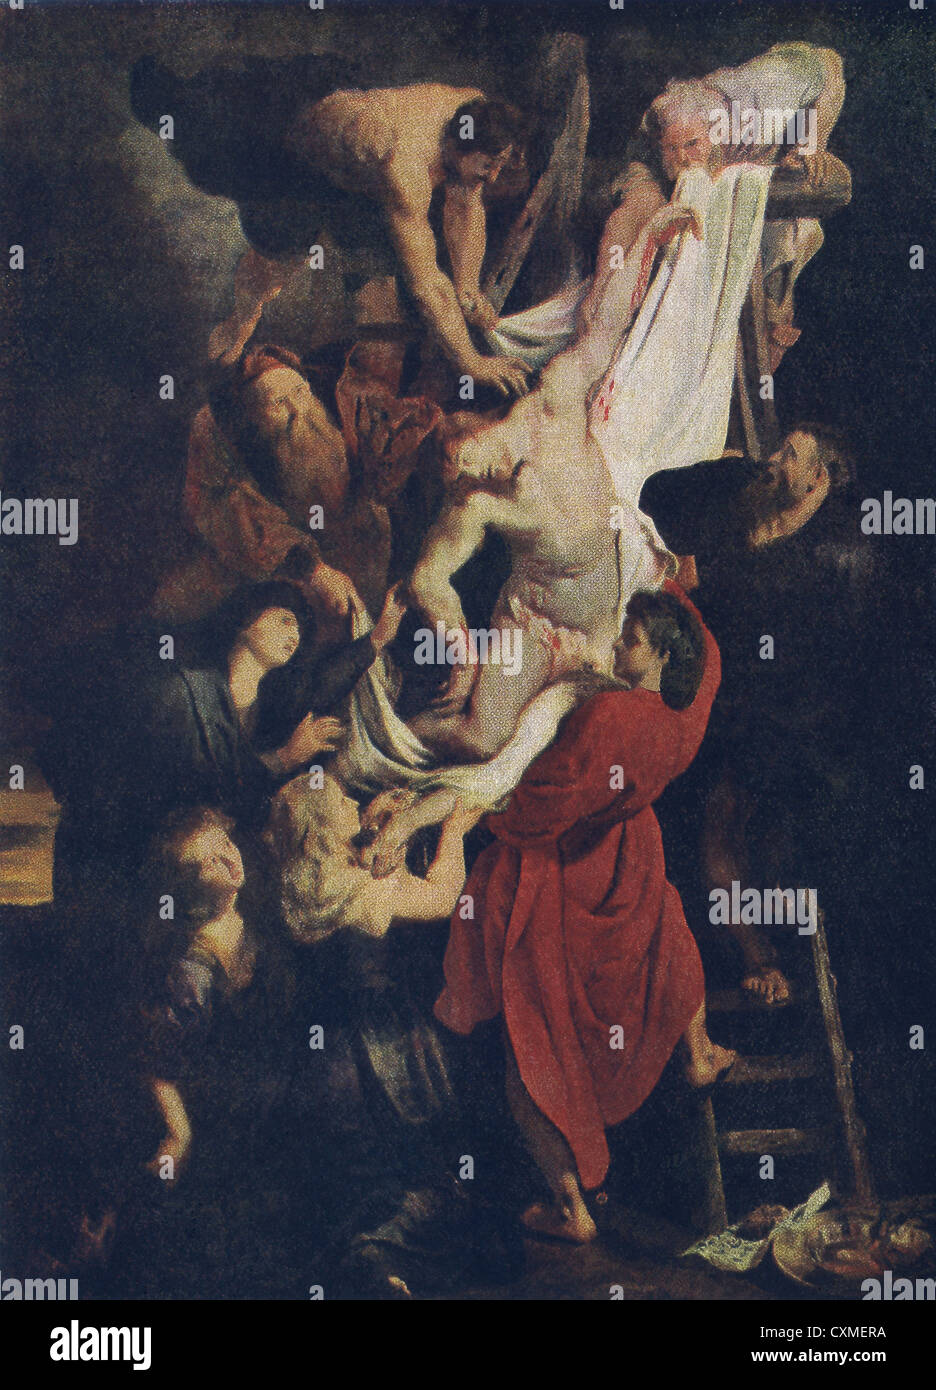 Esta pintura, titulada El Descendimiento es artista Barroco flamenco Peter Paul Rubens en su humor más realista. Foto de stock